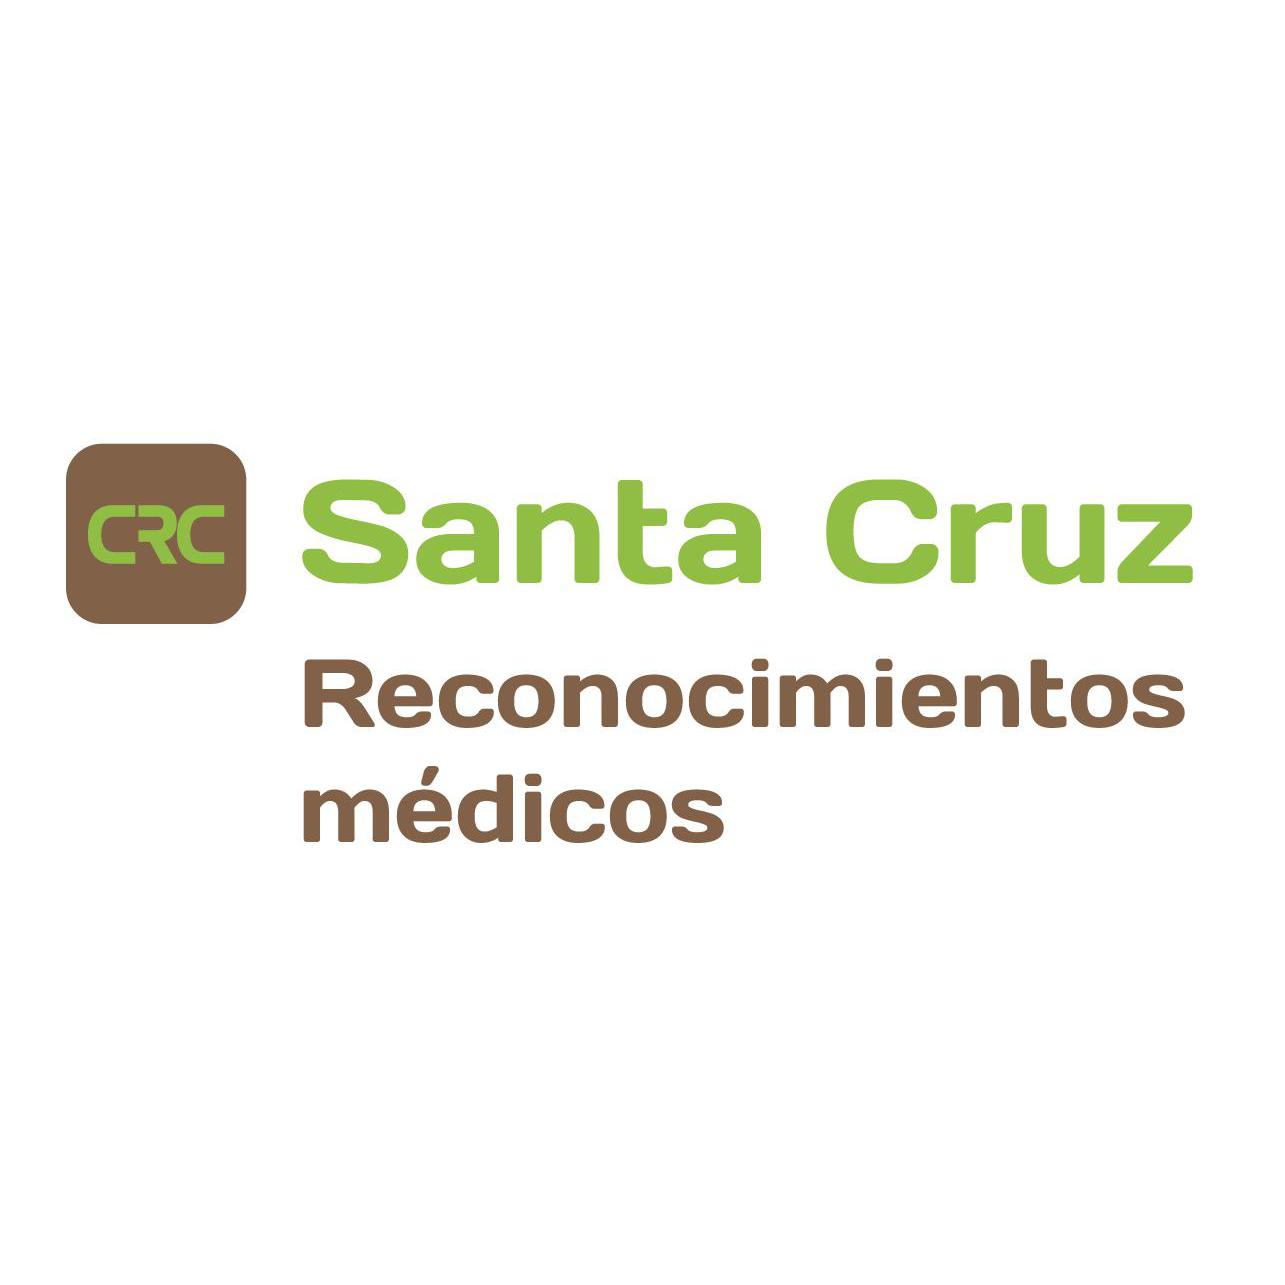 Fotos de Centro de reconocimientos médicos Santa Cruz-Renovar carnet de conducir